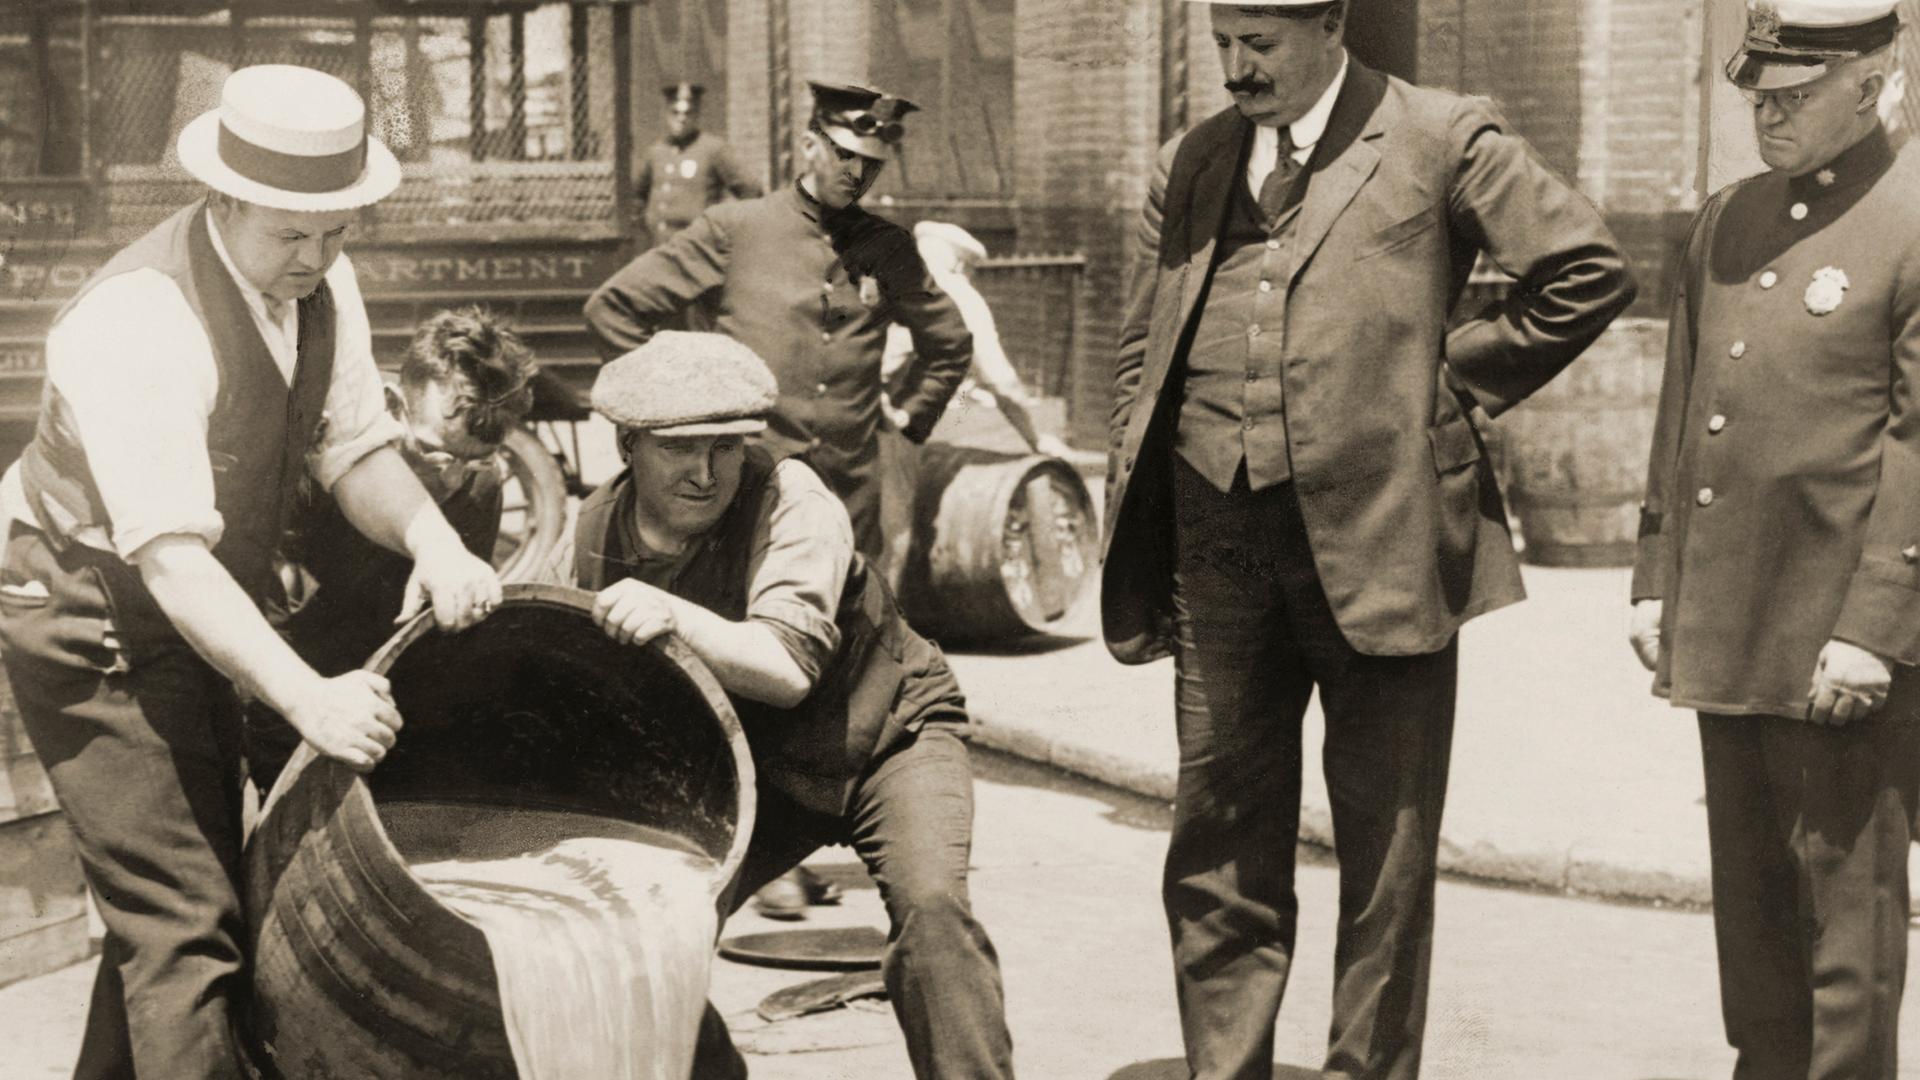 Ein Polizist und andere Männer schauen Anfang der 1920er-Jahre in New York dabei zu, wie zwei Personen ein Fass in einen Gulli entleeren.